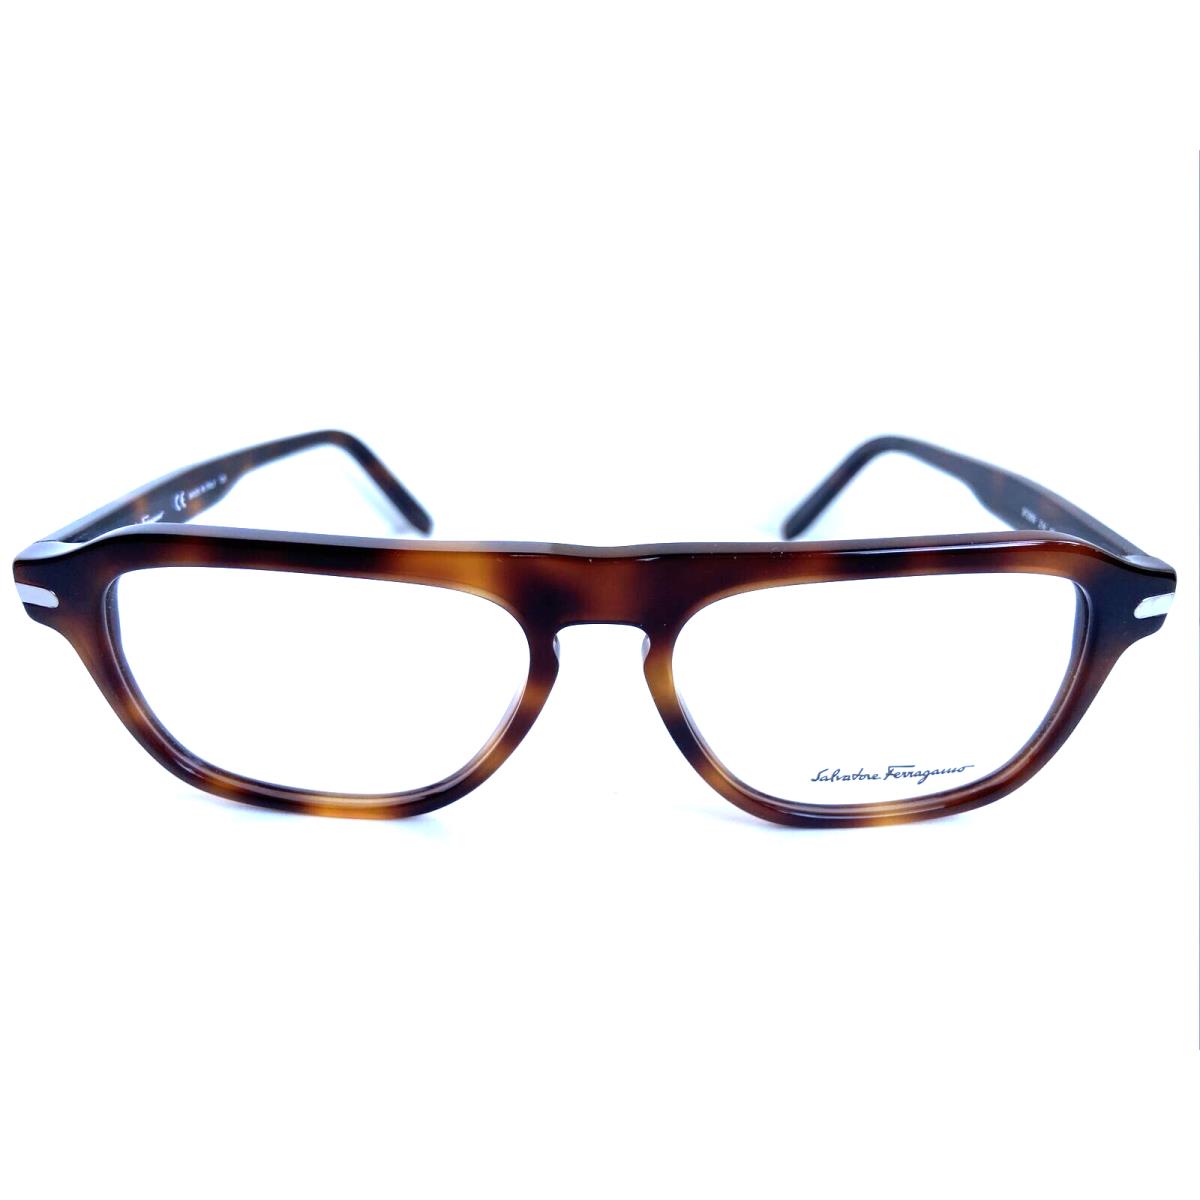 Salvatore Ferragamo SF 2869 214 55mm Tortoise Men`s Eyeglasses Frame